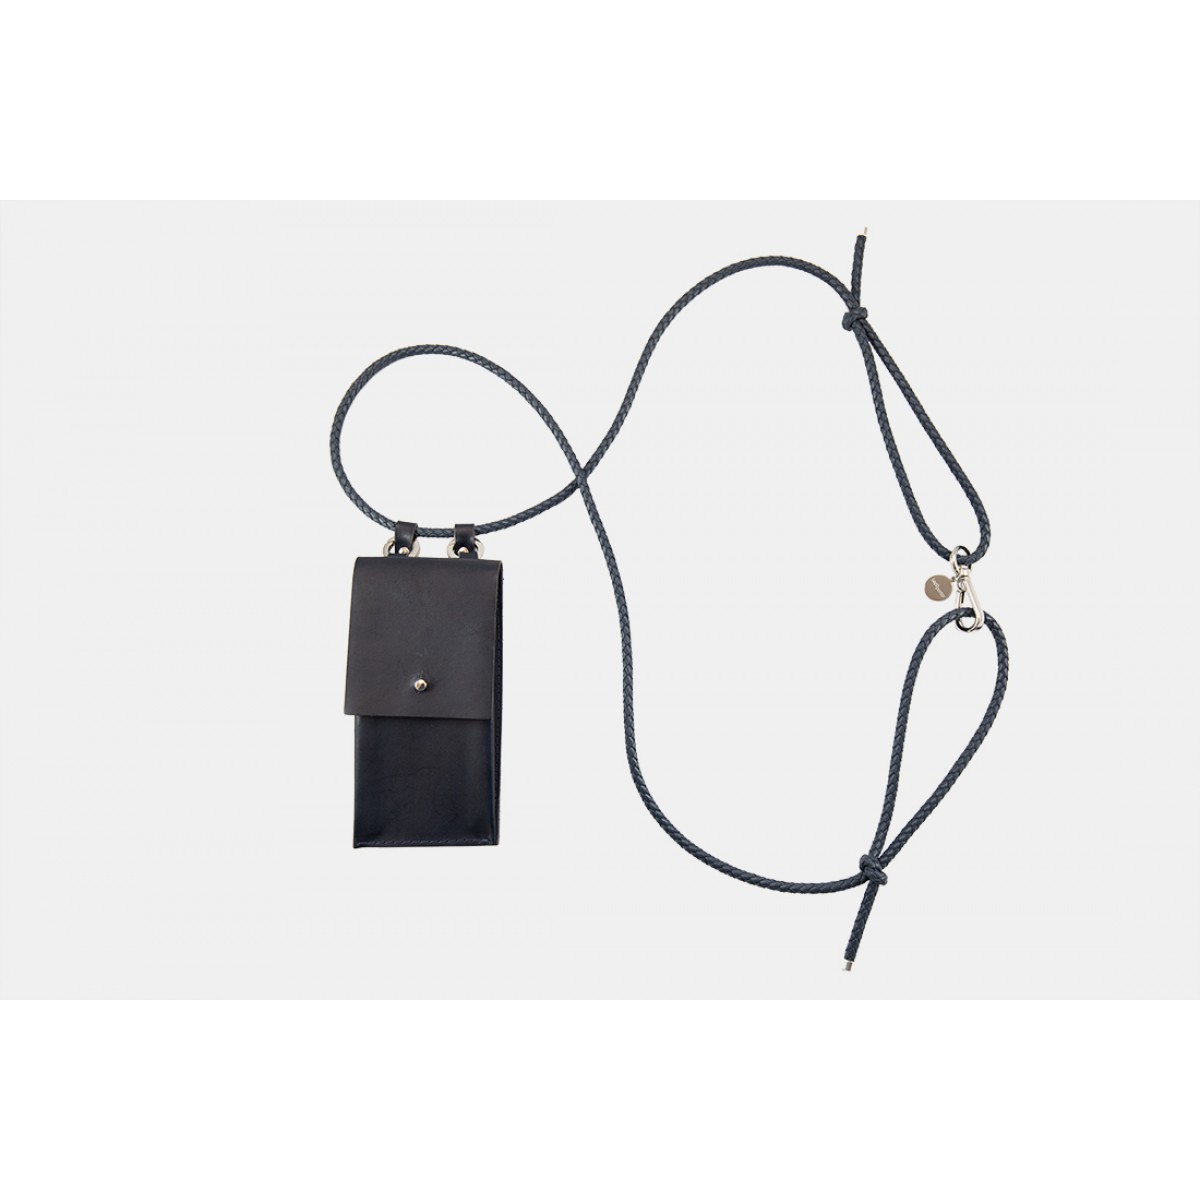 iPhone case zum umhängen mit geflochtener Lederkordel und abnehmbarer Tasche, dunkelblau/silber